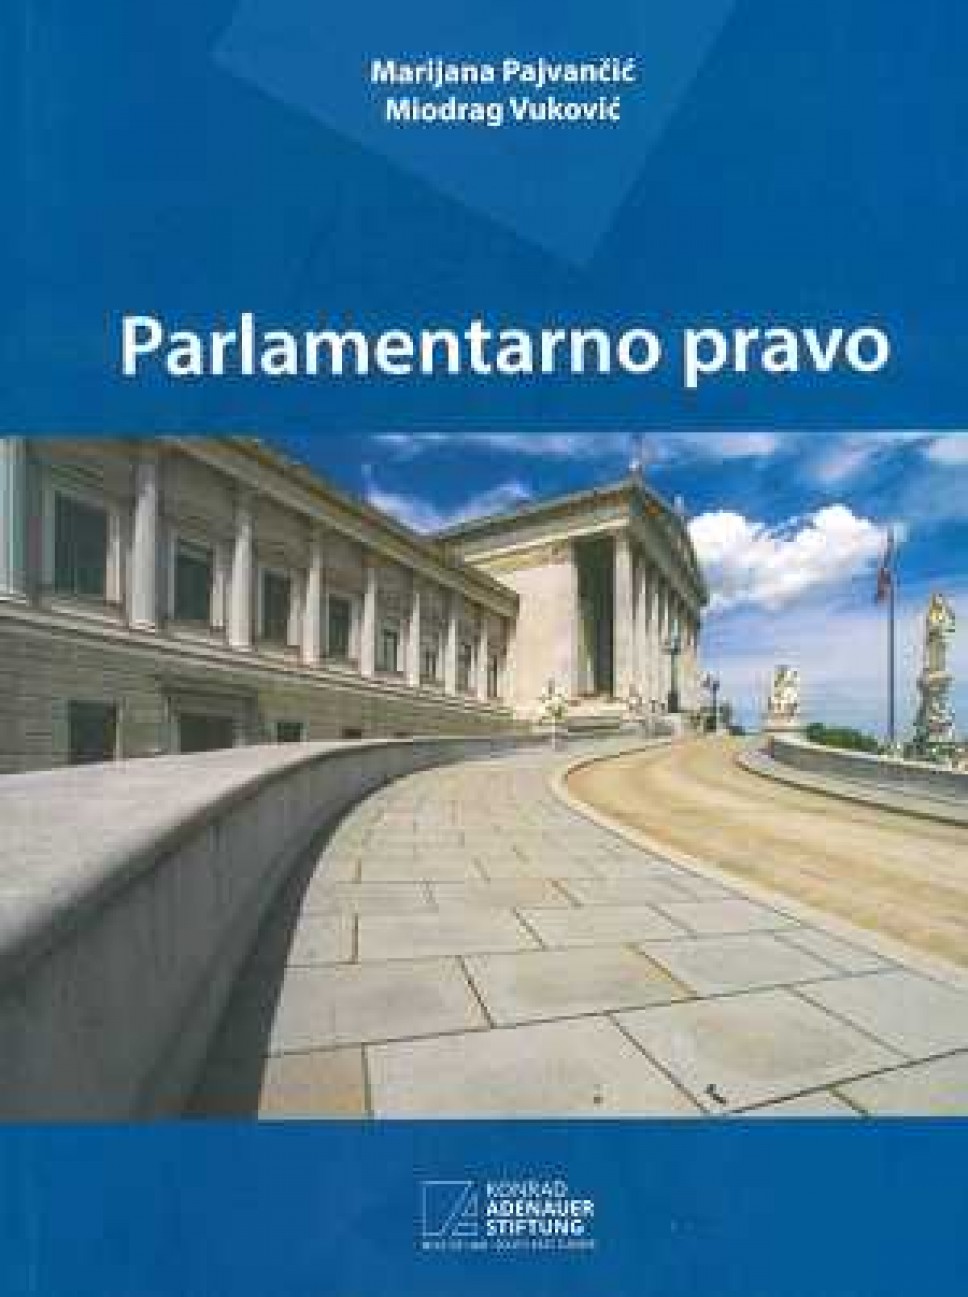 Poziv na promociju knjige "Parlamentarno pravo"